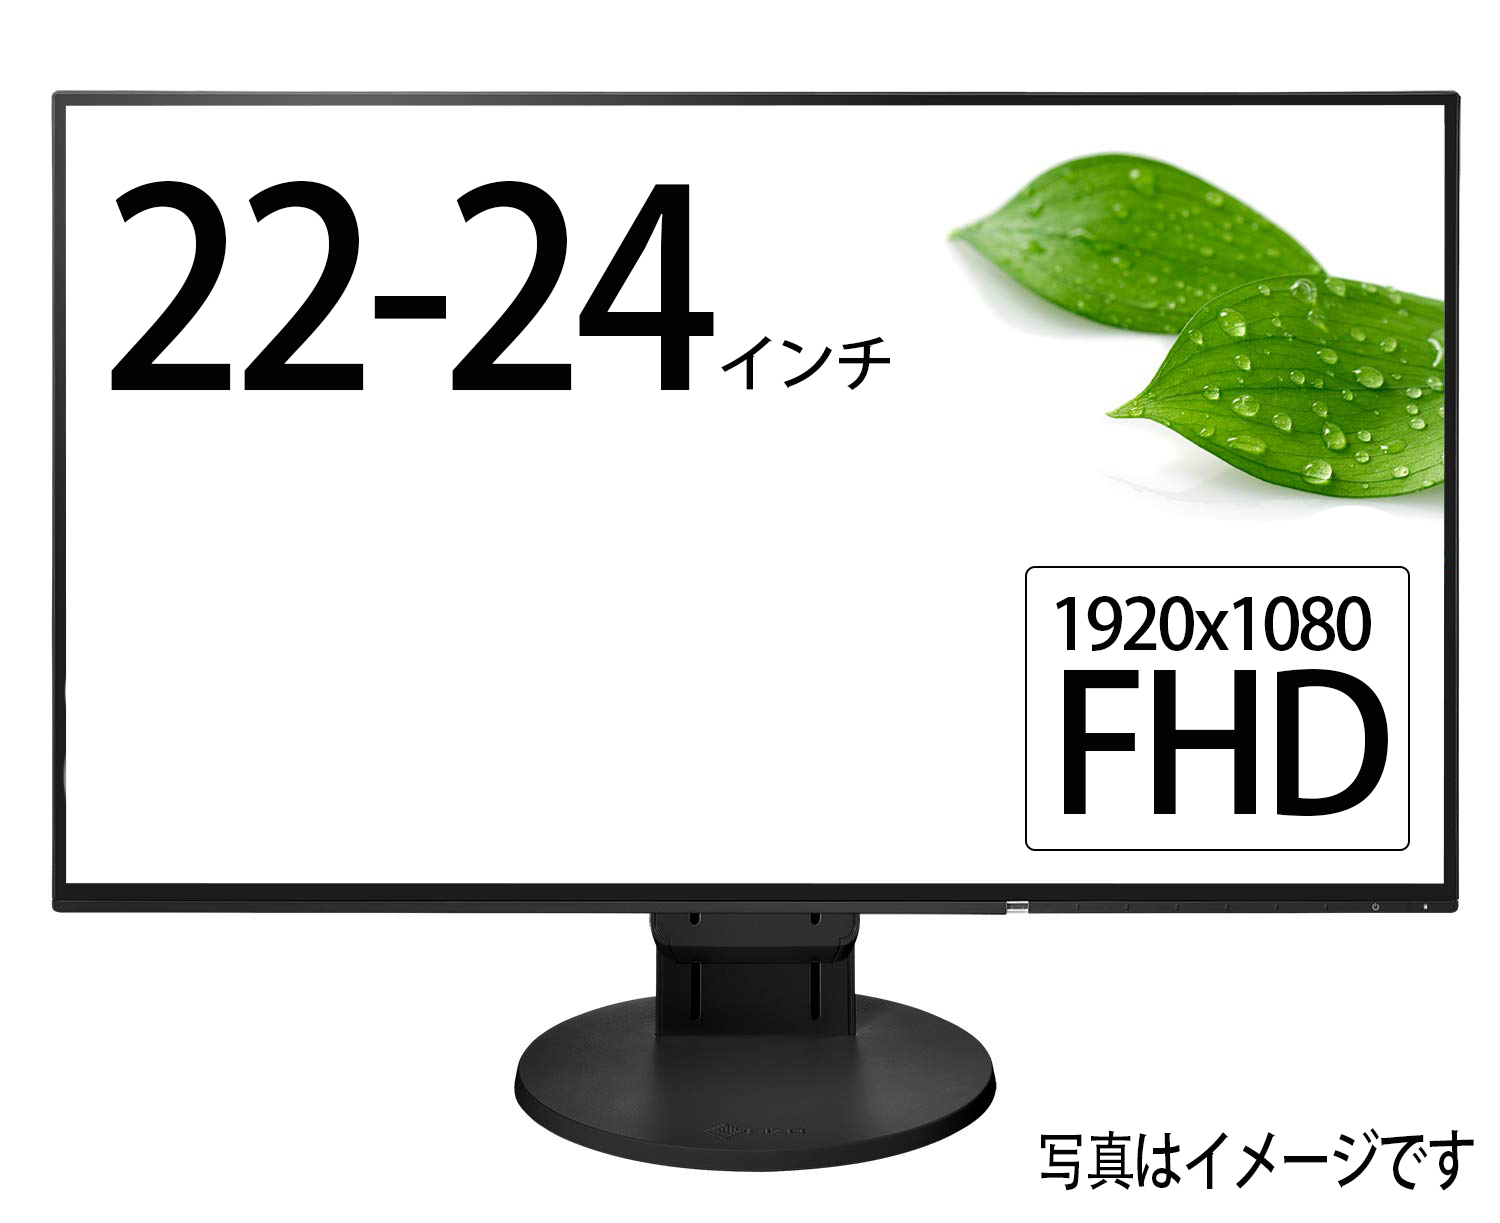 [ администратор . случайный ] жидкокристаллический монитор черный 22-24 дюймовый 1920x1080 FullHD полный HD б/у монитор б/у дисплей 